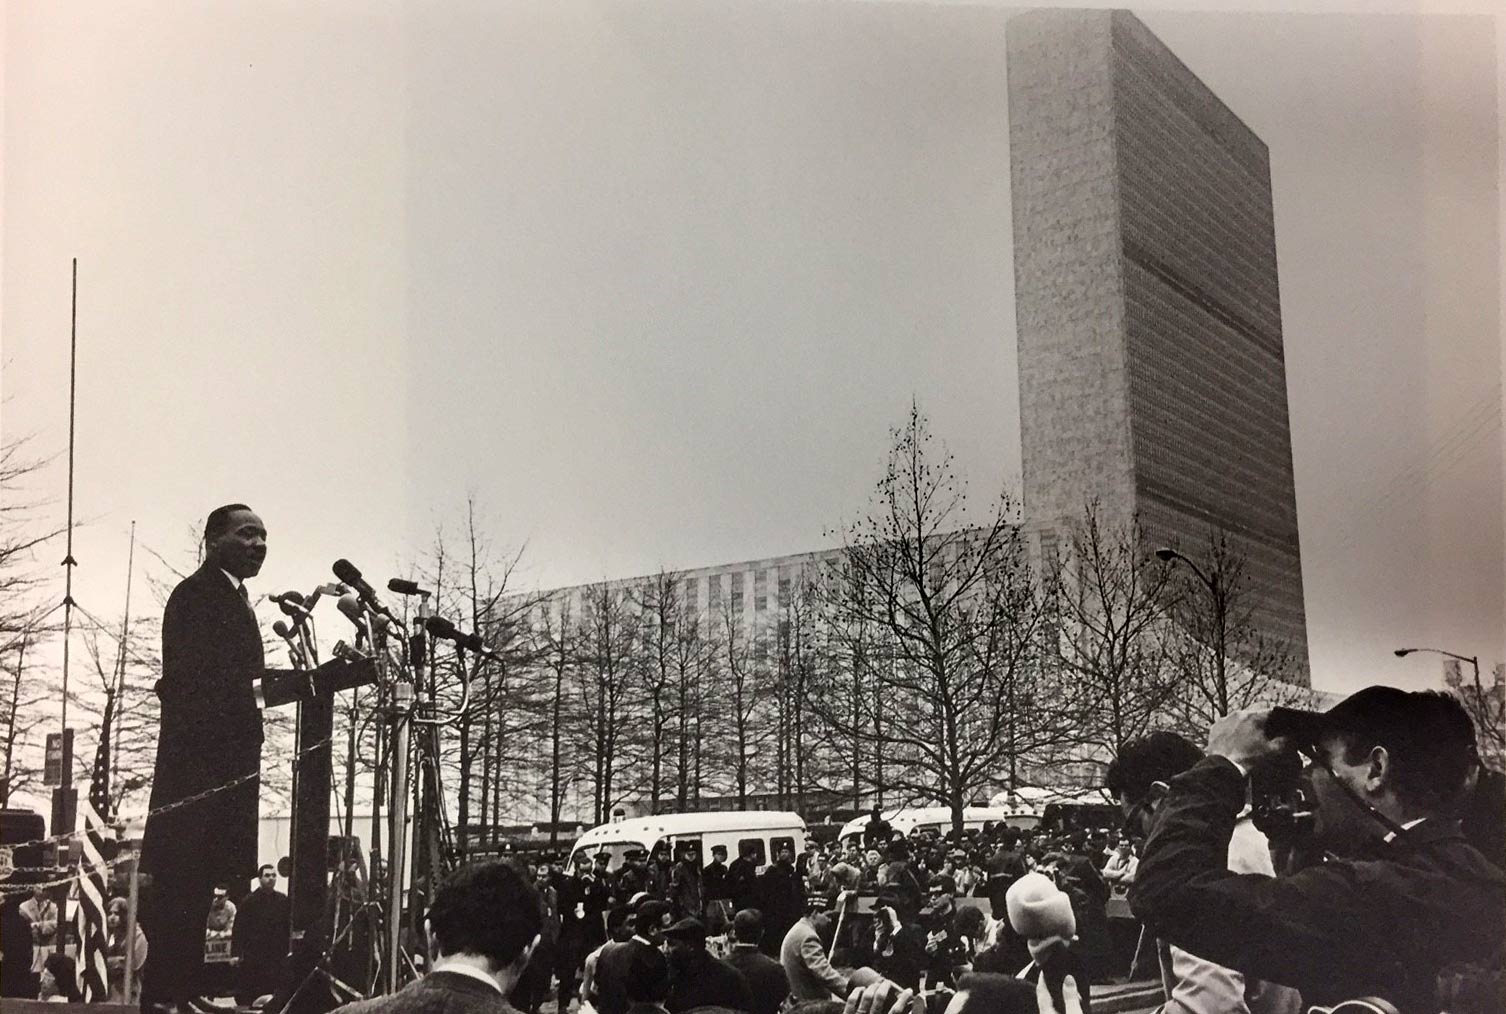 De uma plataforma elevada, o Rev. Martin Luther King Jr. se dirige a uma multidão reunida de jornalistas na cidade de Nova York